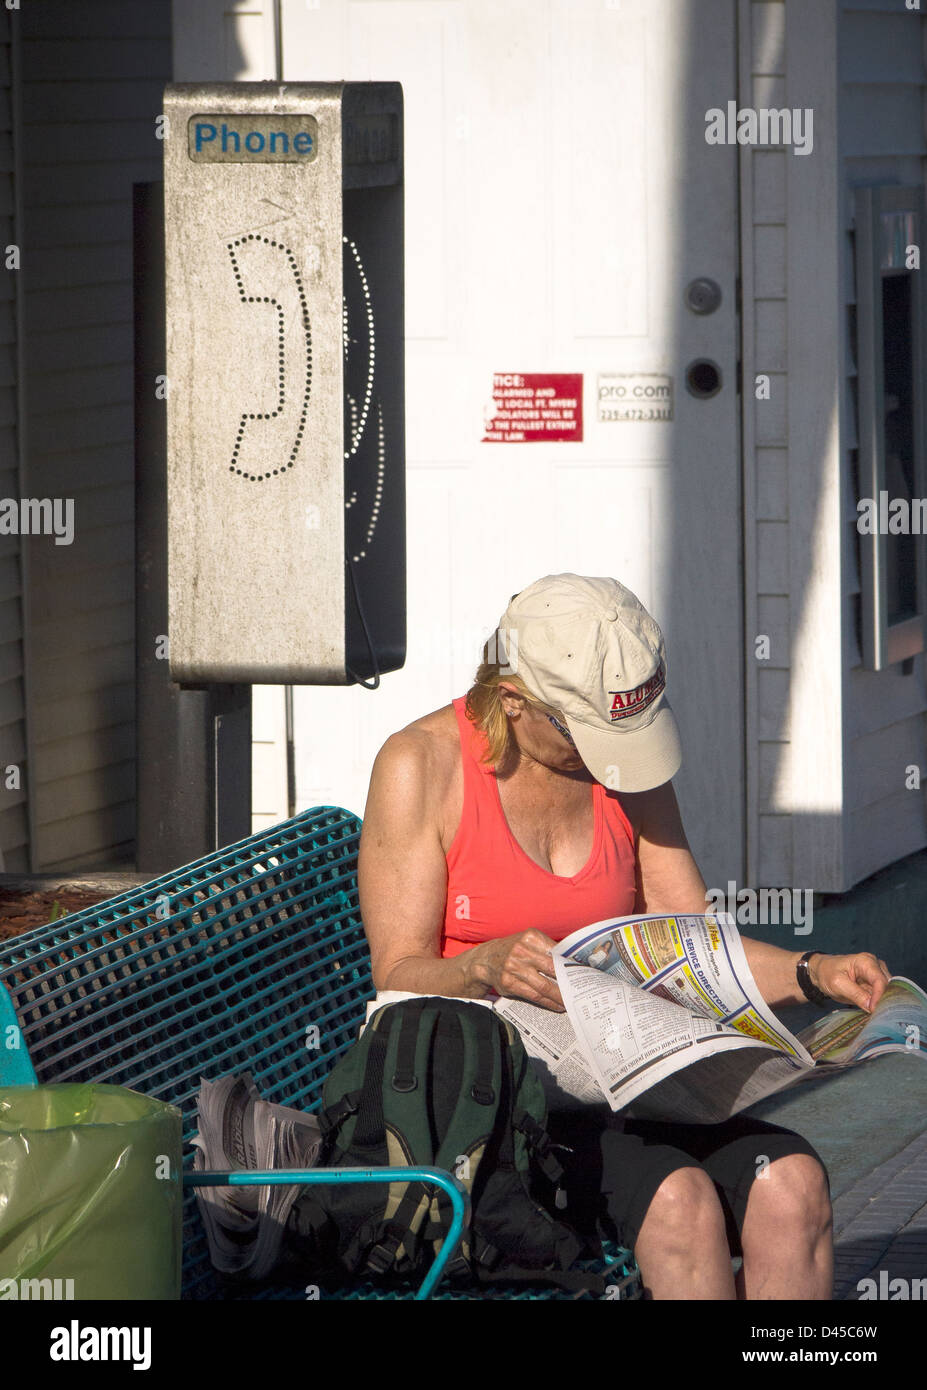 Telefonzelle am Florida-Strand mit jemand liest eine Zeitung. Technologie macht diese Szene weniger häufig, wie wir gehen digital Stockfoto